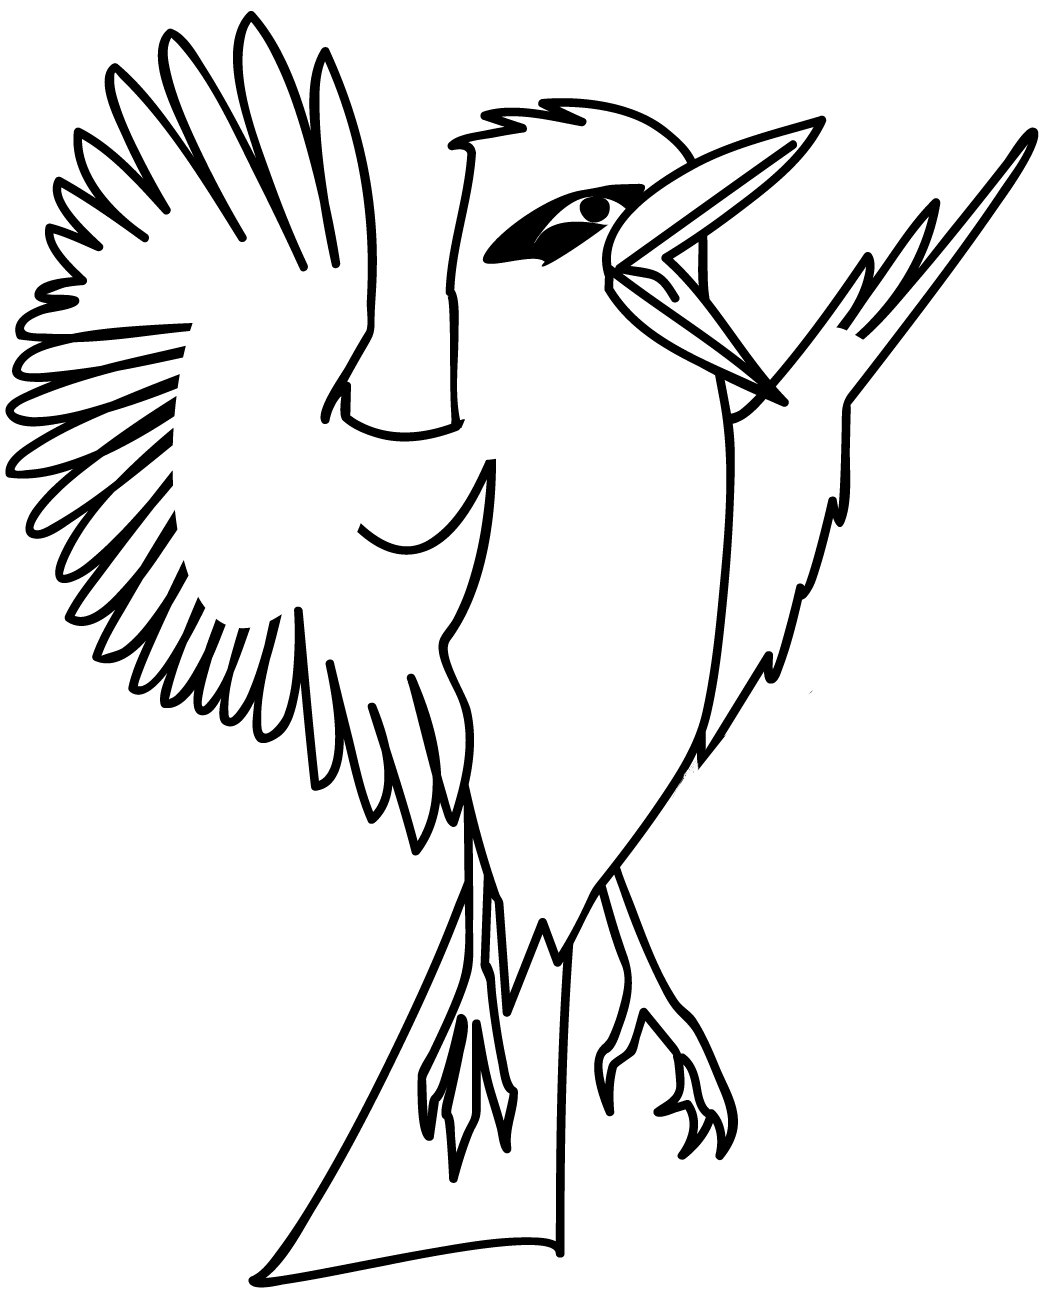 Cookaburra '11 logo, a startled kookaburra.